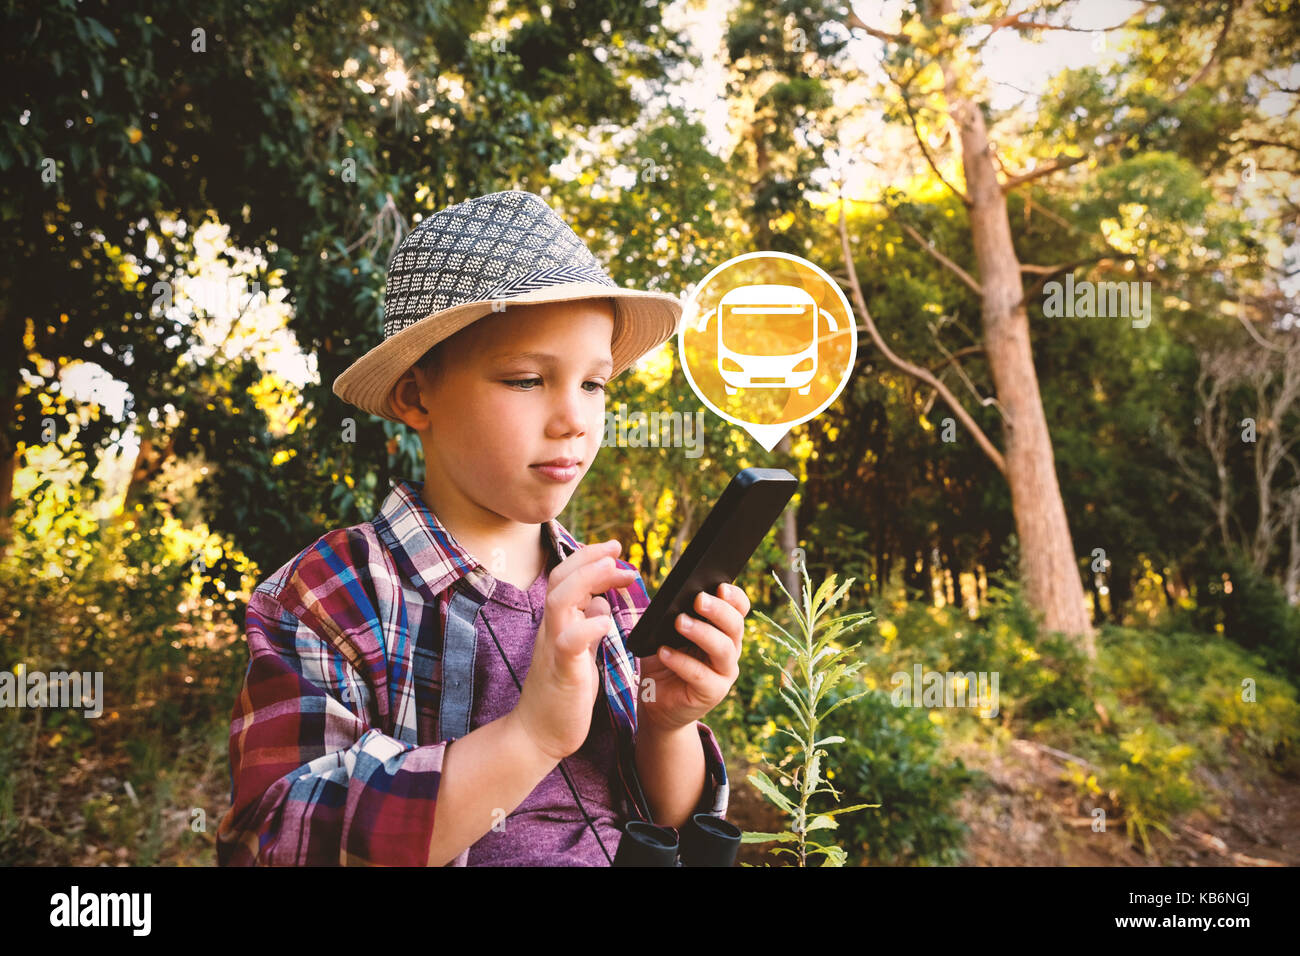 Digitale zusammengesetzte Bild im Bus Symbol auf grünen Kreis gegen Junge mit Walkie talkie iat Wald Stockfoto